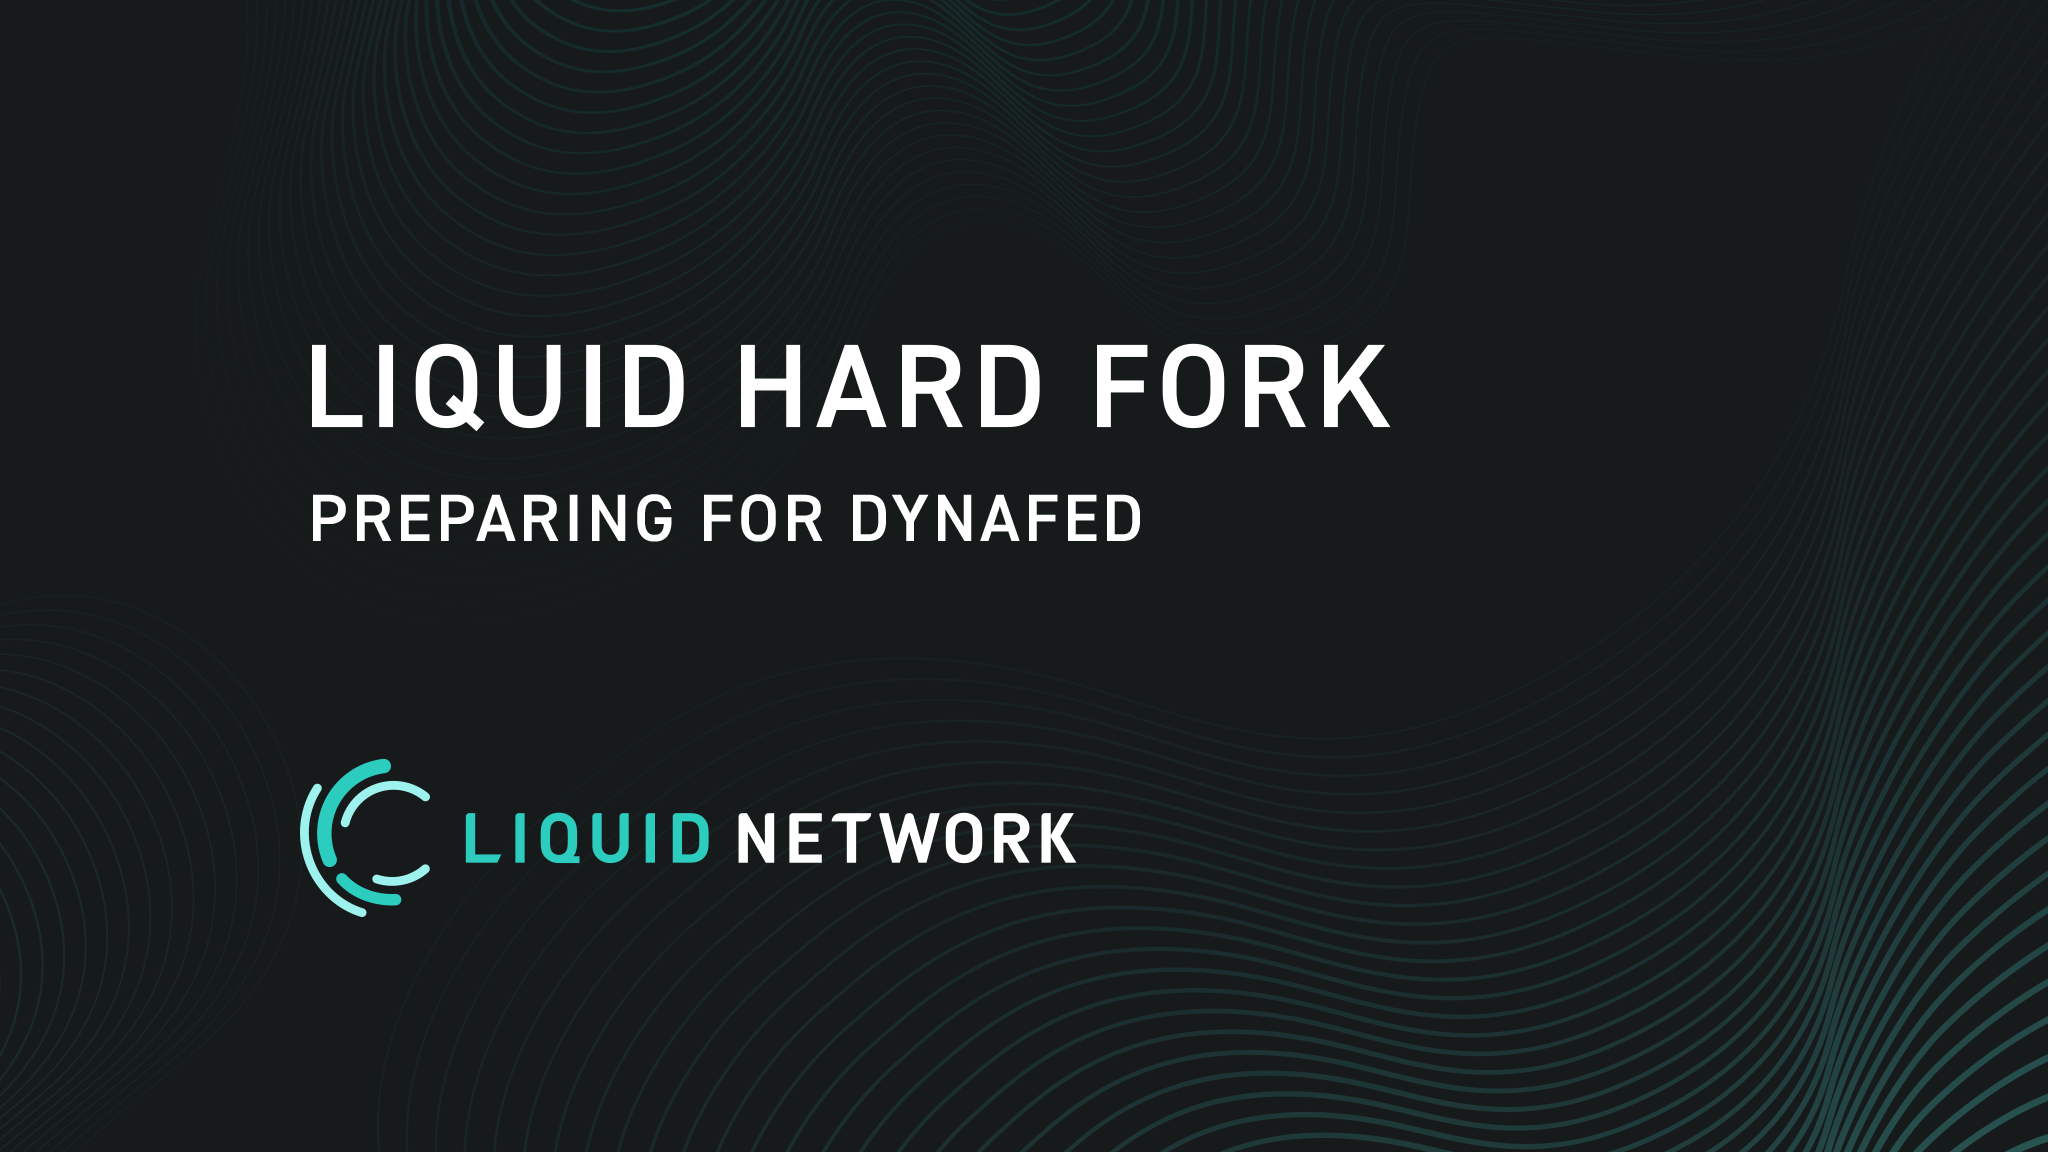 Hard Fork Set for Monday, October 4 in Preparation for DynaFed